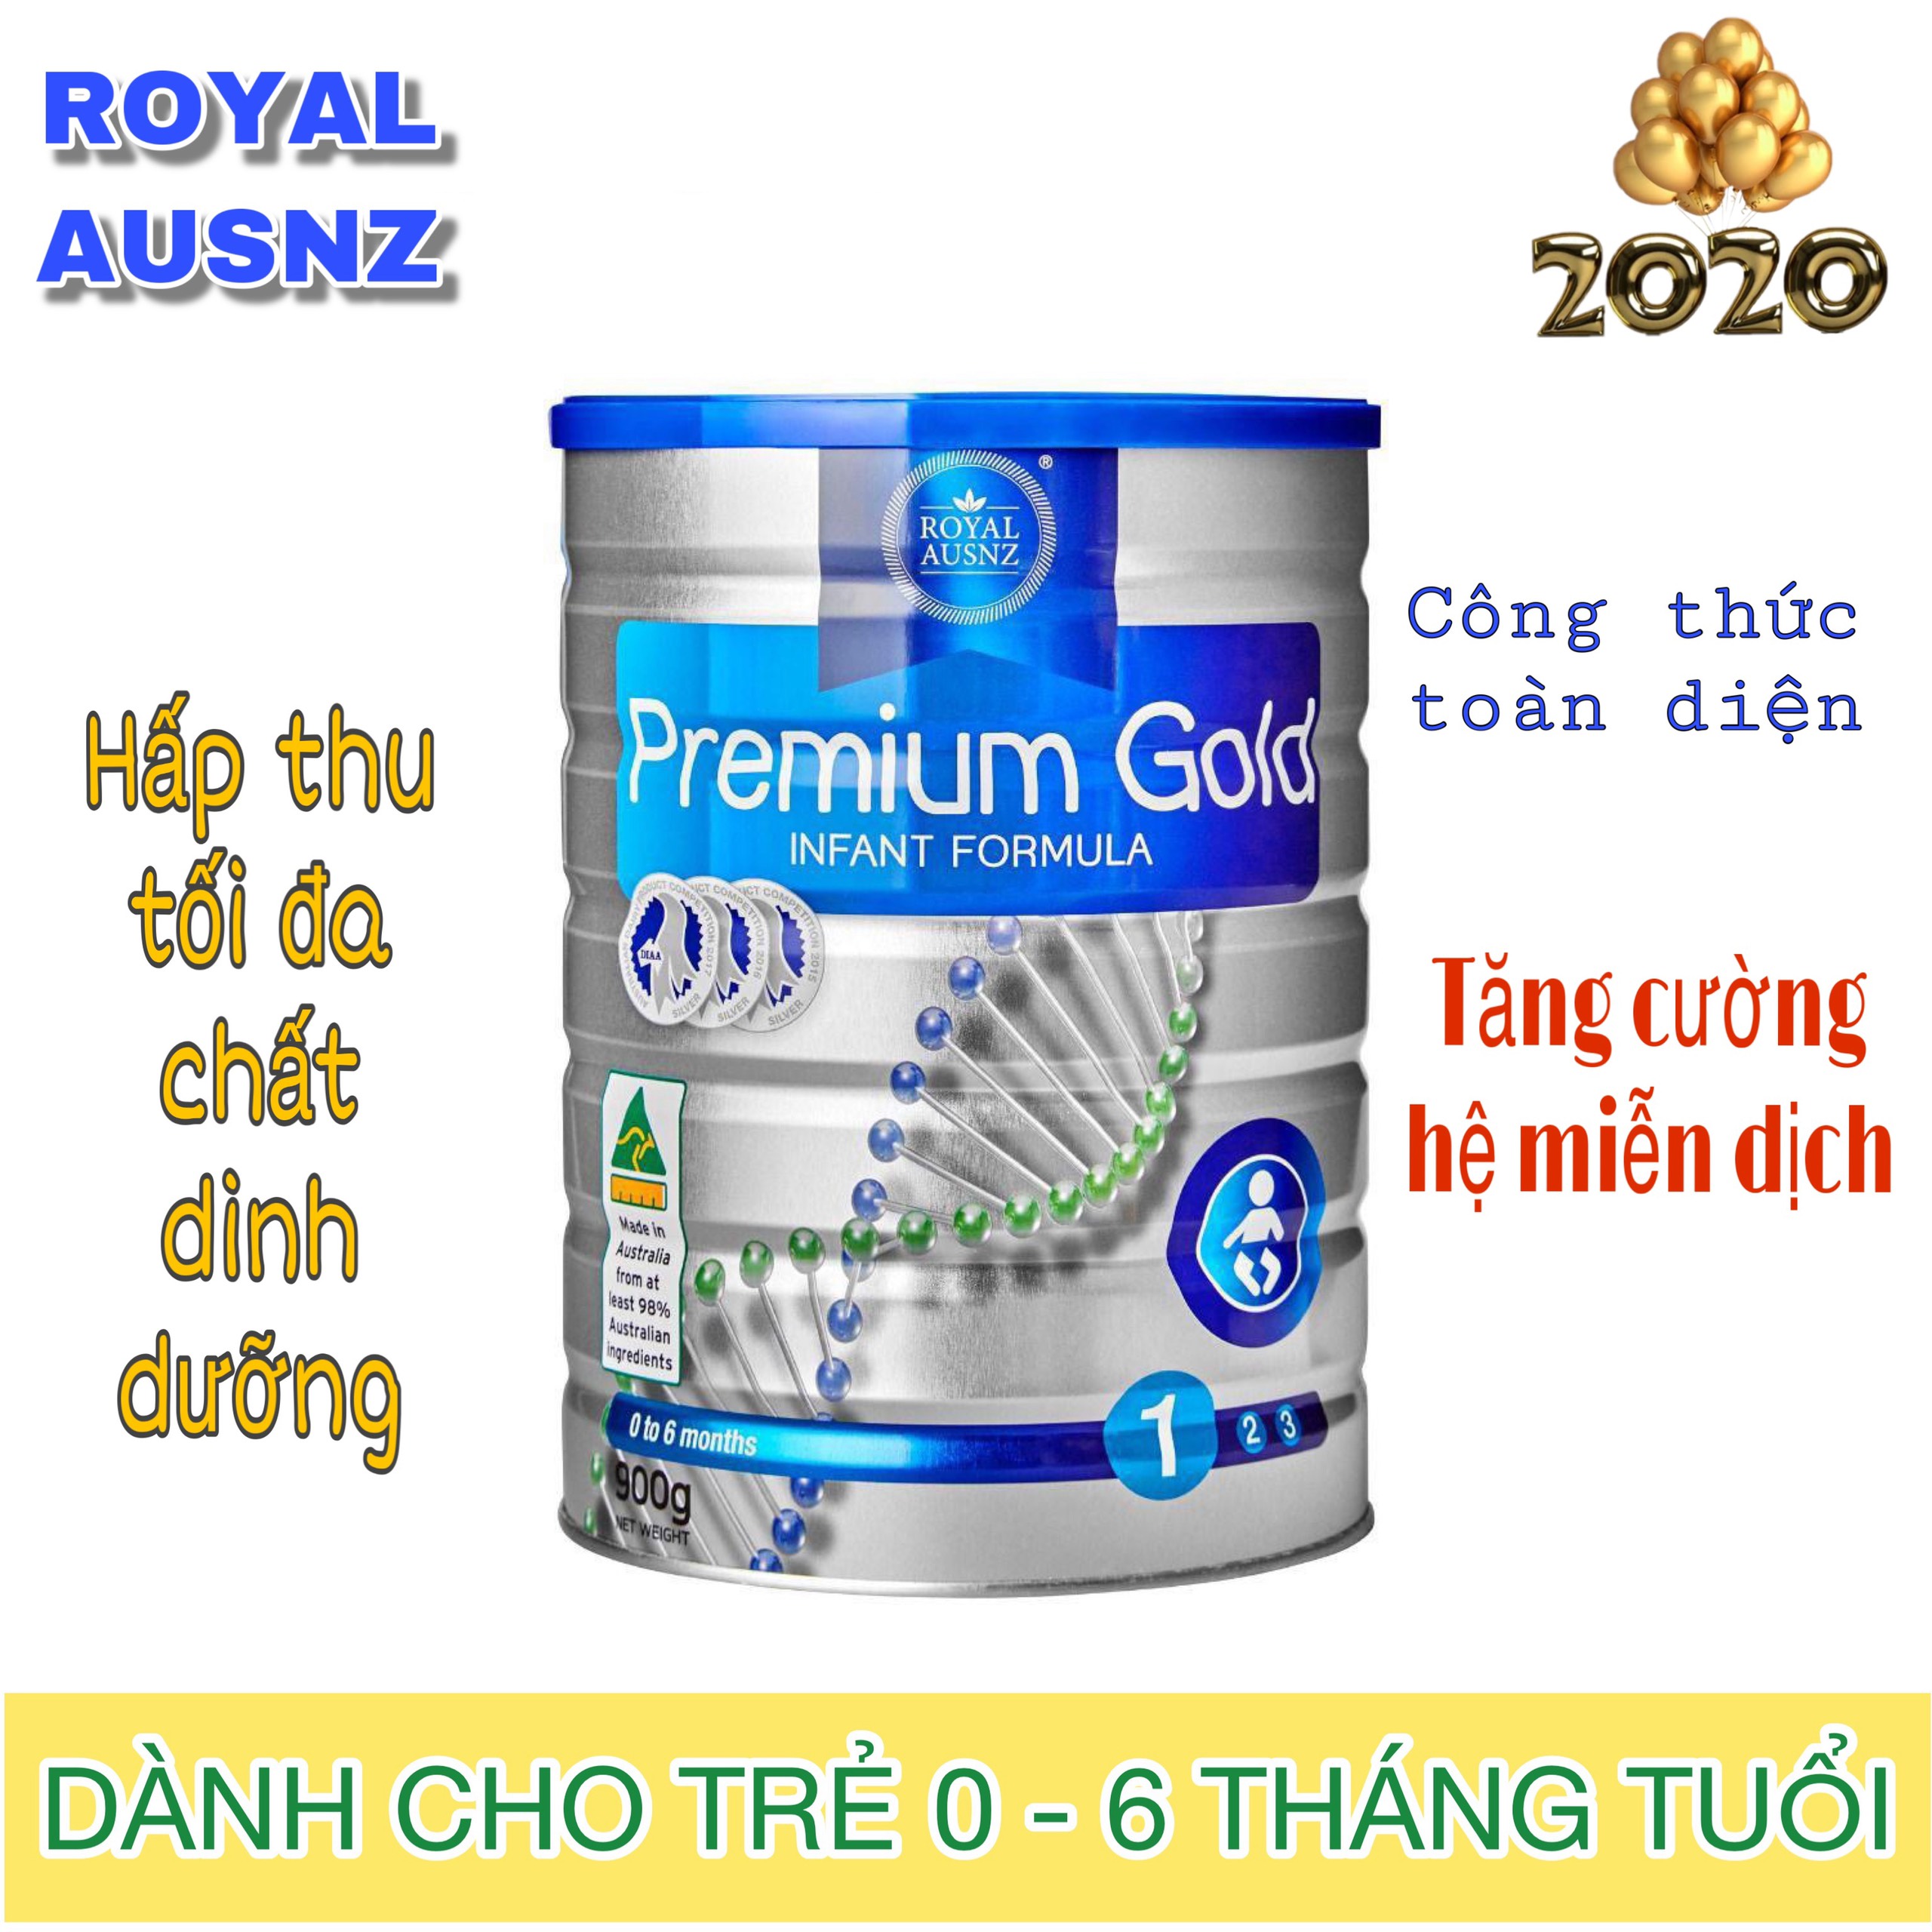 Sữa Hoàng Gia Úc Royal Ausnz Premium Gold 1 cho bé 0-6 tháng